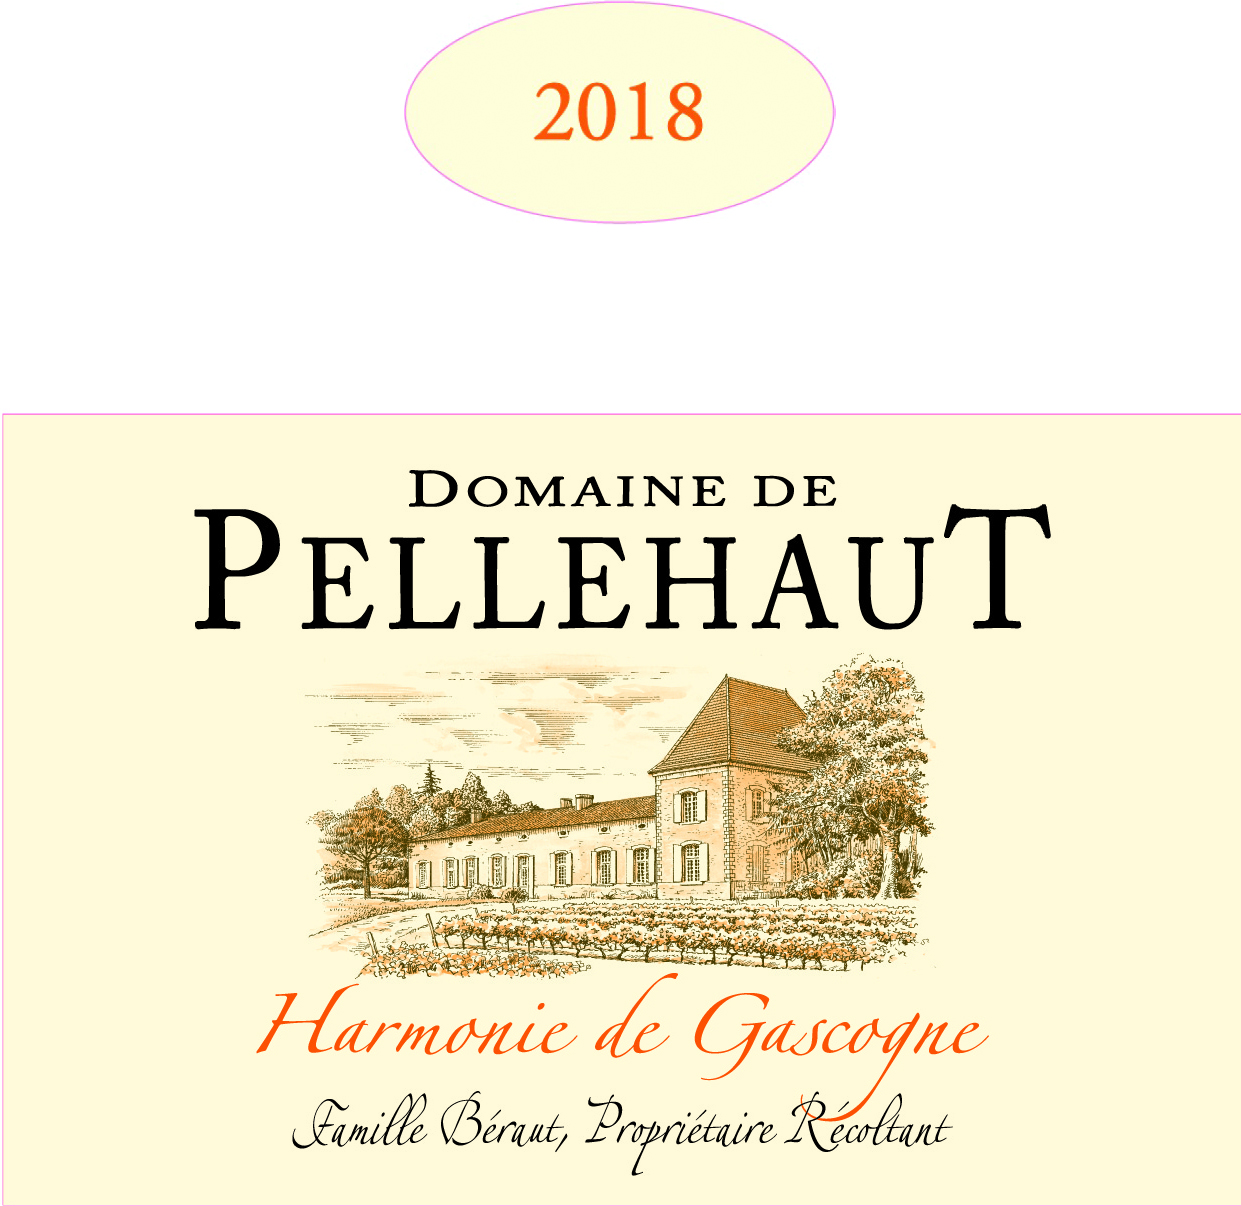 Domaine de Pellehaut Harmonie de Gascogne IGP Côtes de Gascogne Blanc 2018